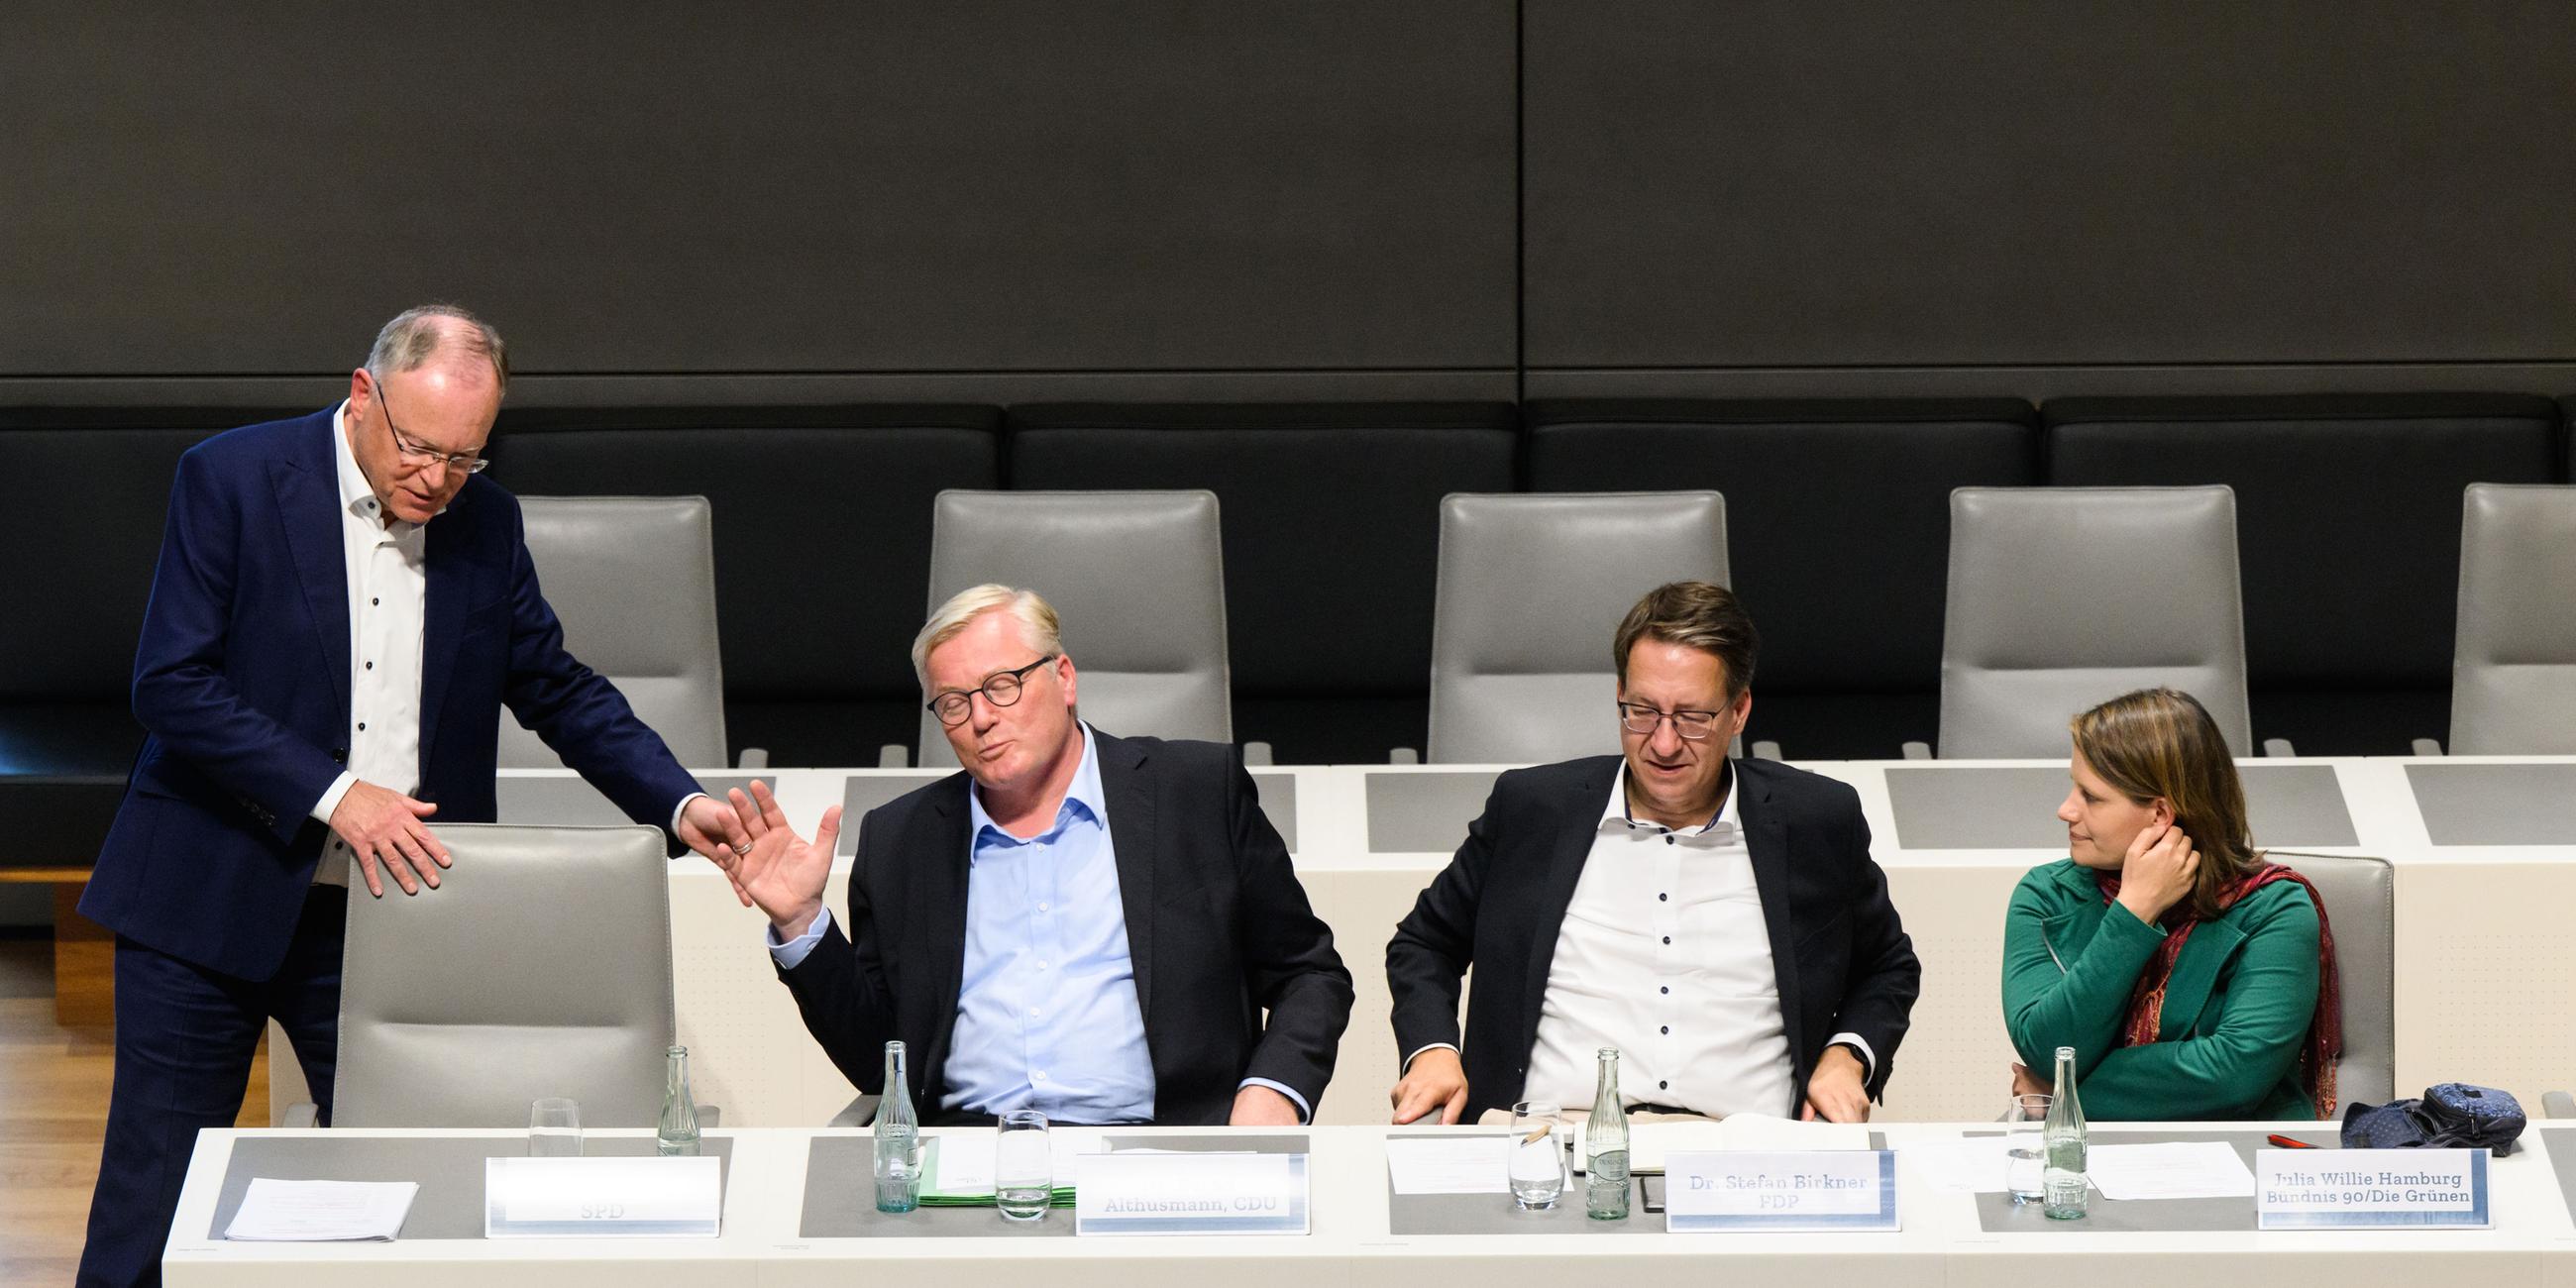 Die Spitzenkandidaten ihrer jeweiligen Parteien, Stephan Weil (SPD), Bernd Althusmann (CDU), Stefan Birkner (FDP) und Julia Willie Hamburg (Grüne), sitzen bei einer Diskussionsrunde von "Jugend debattiert" im niedersächsischen Landtag in Hannover am 26.09.2022